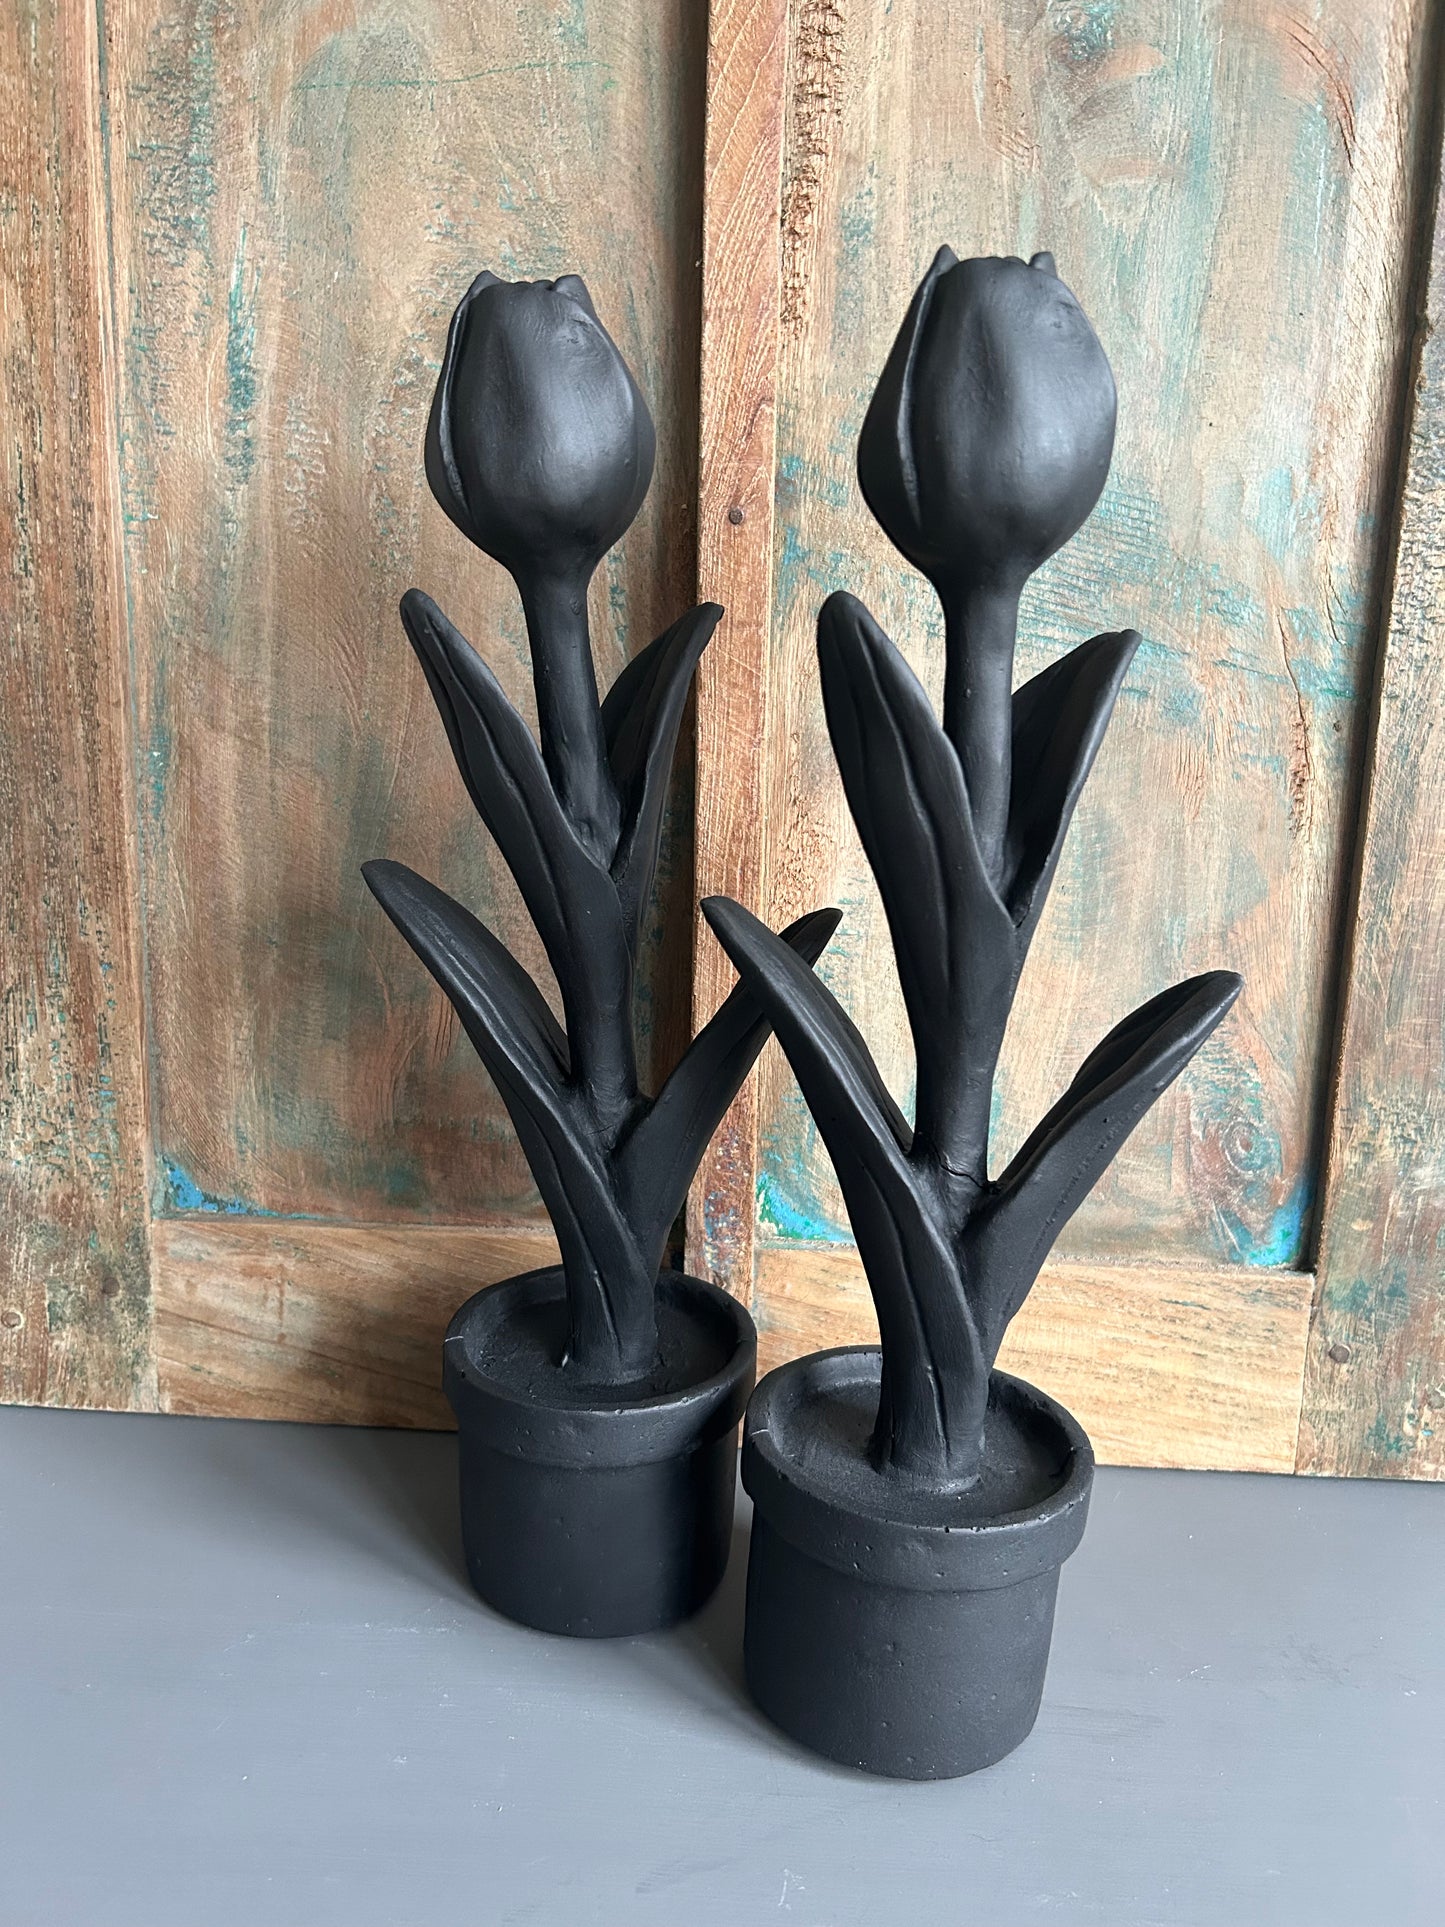 Zwarte tulp van keramiek